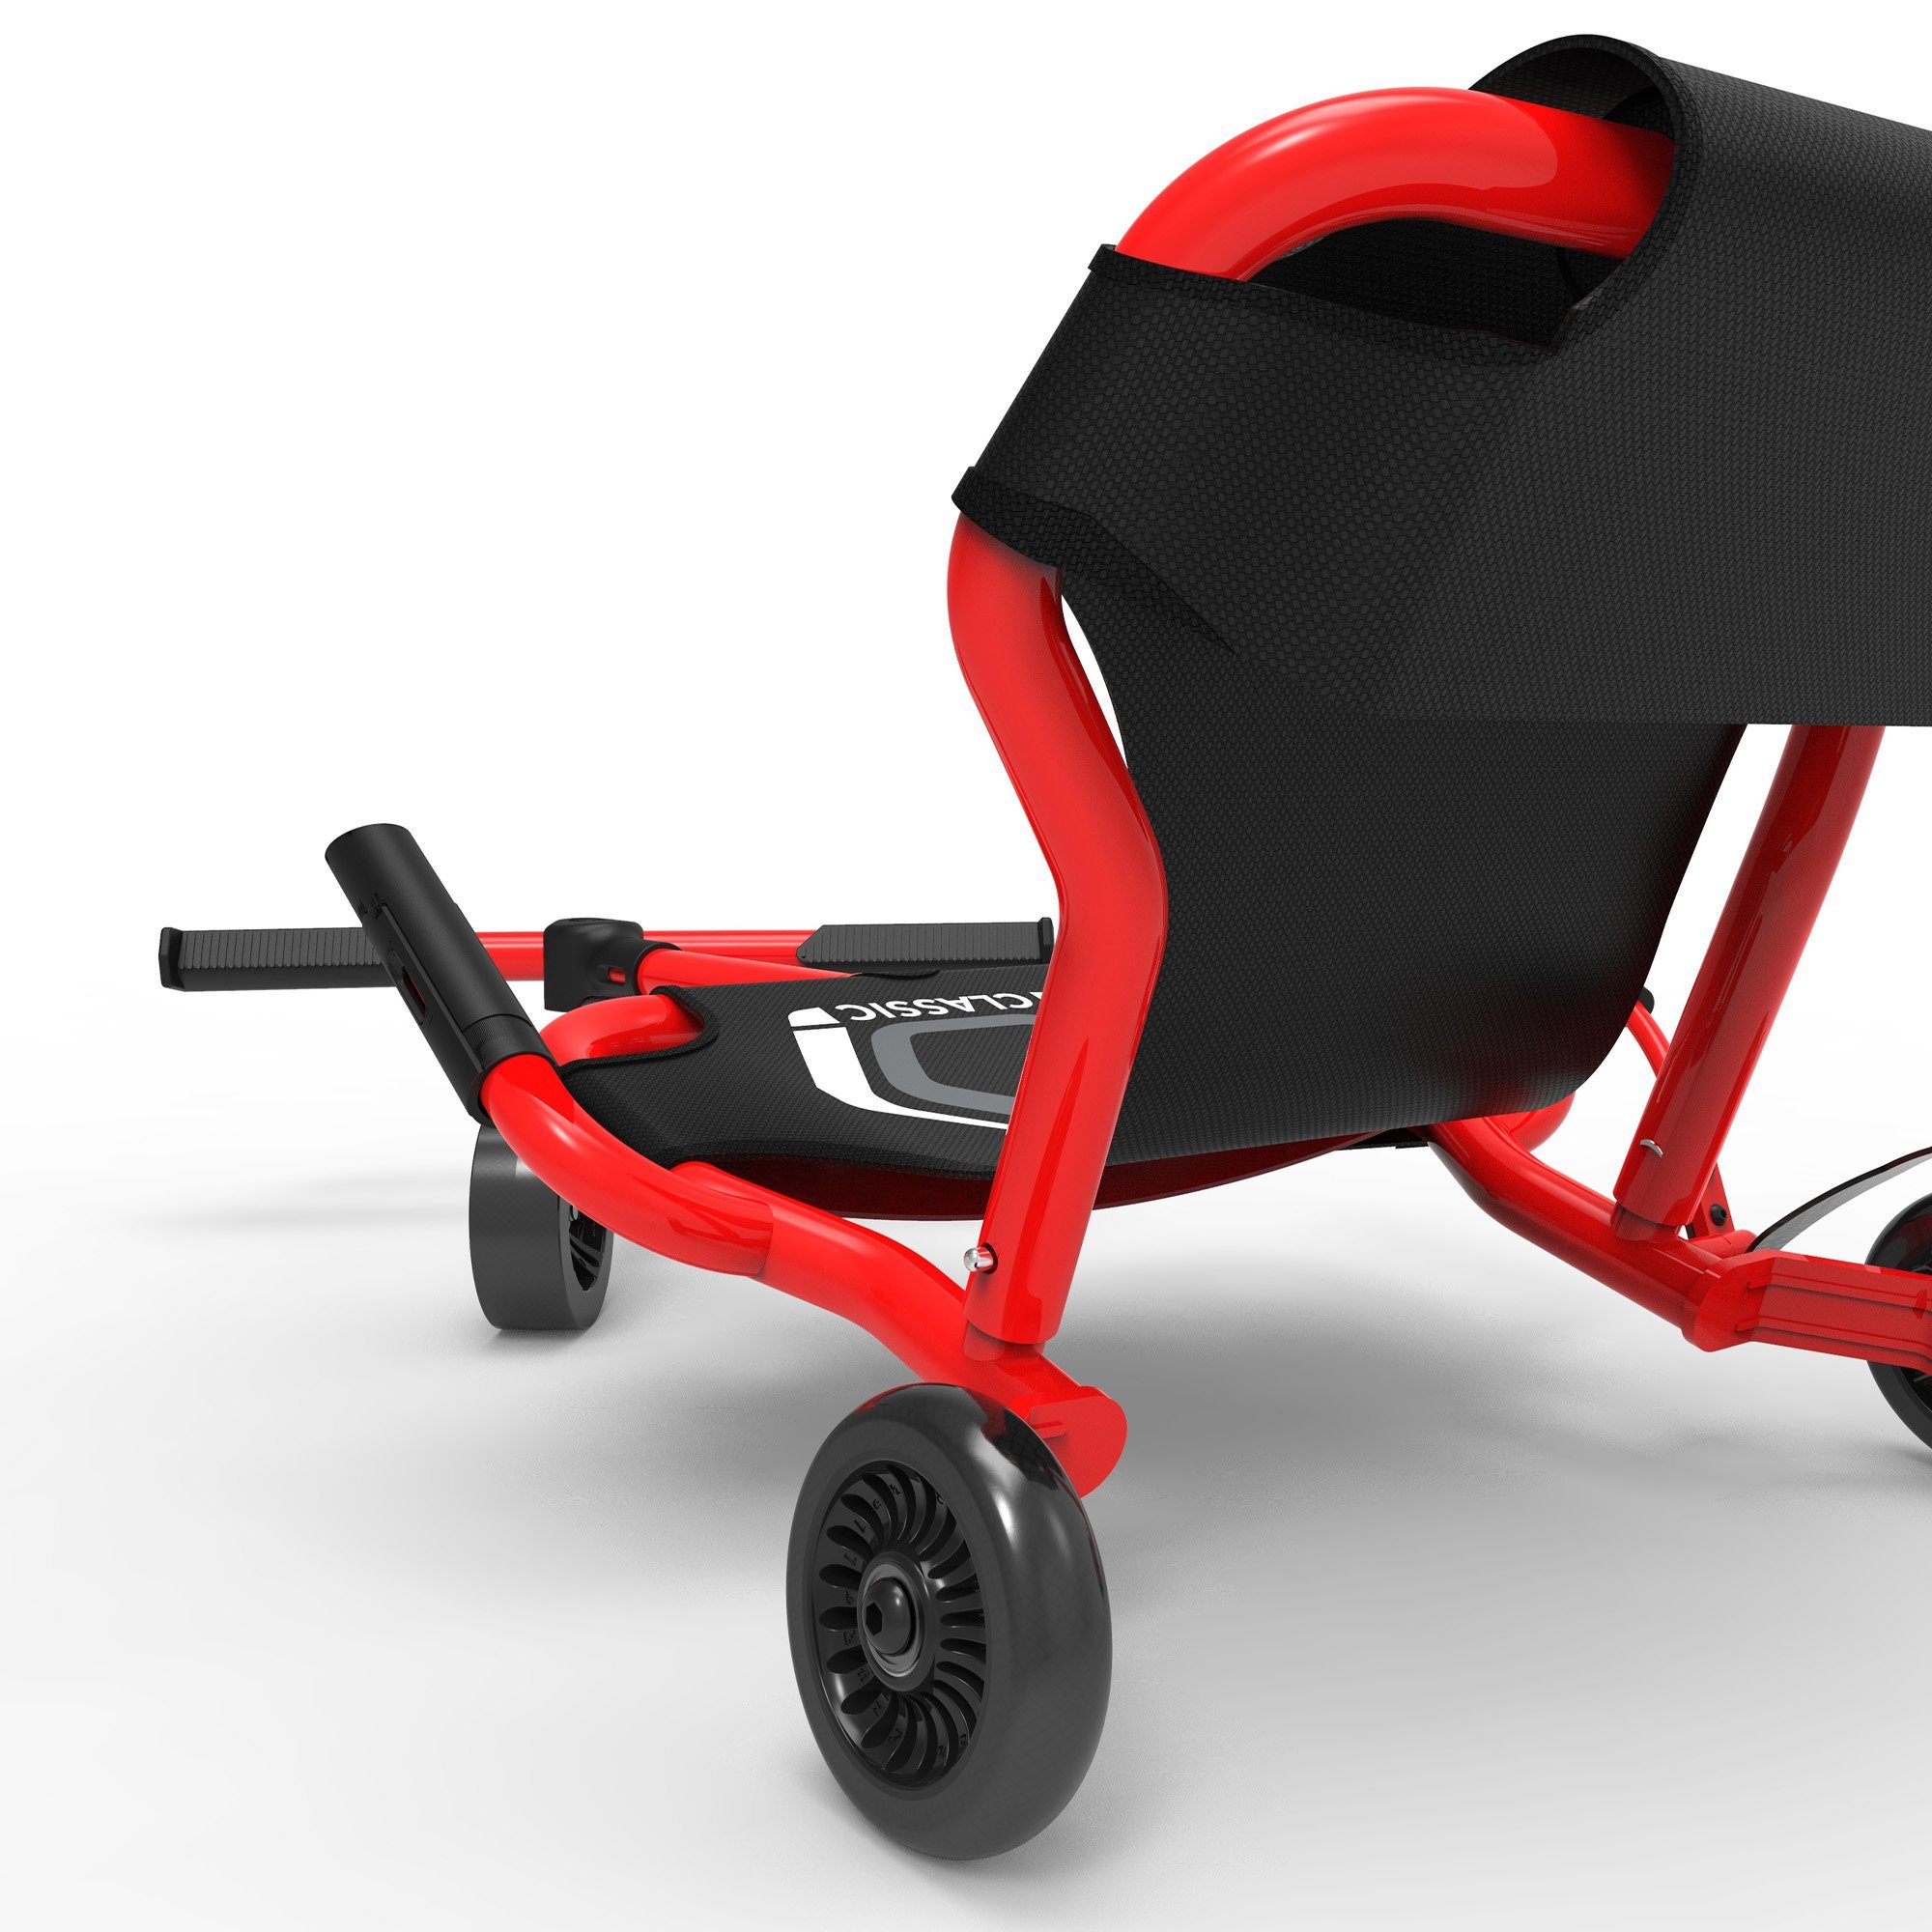 EzyRoller Dreiradscooter Classic X, Kinderfahrzeug Kinder für rot 4 Funfahrzeug Dreiradscooter Jahre bis ab 14